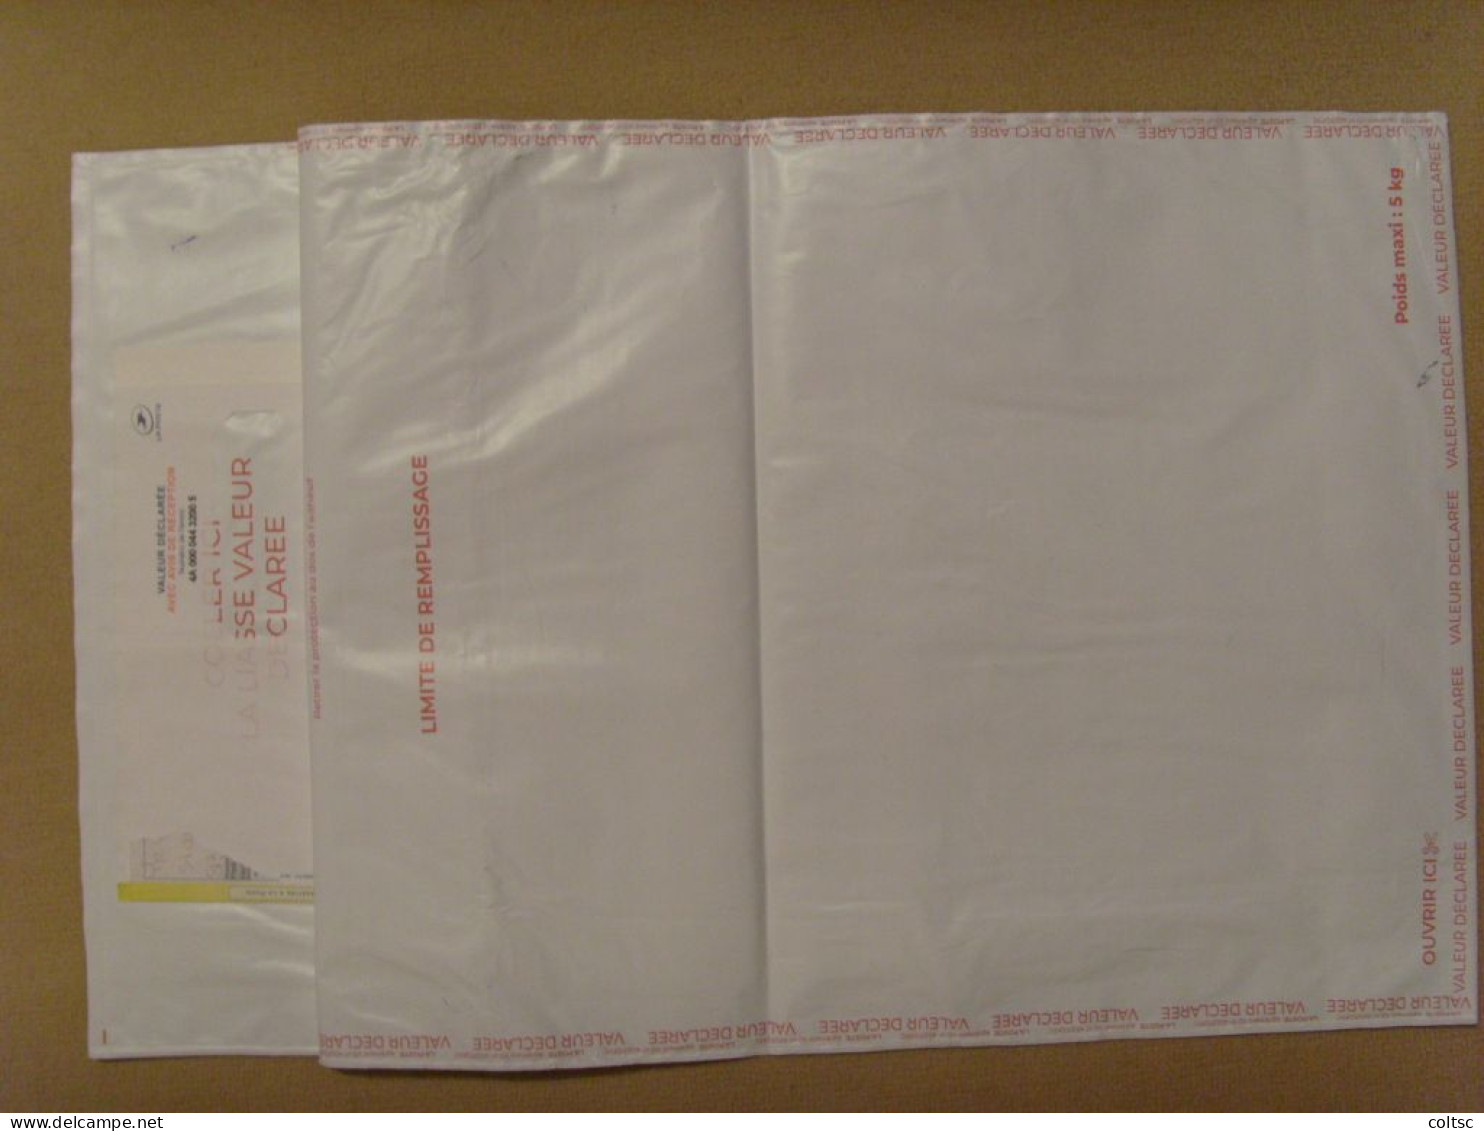 18941- Enveloppe Plastique Pour Envoi En Recommandé Avec Valeur Déclarée, Ici 1 200€, Affranchie à 164F Soit 25€ - Postal Rates